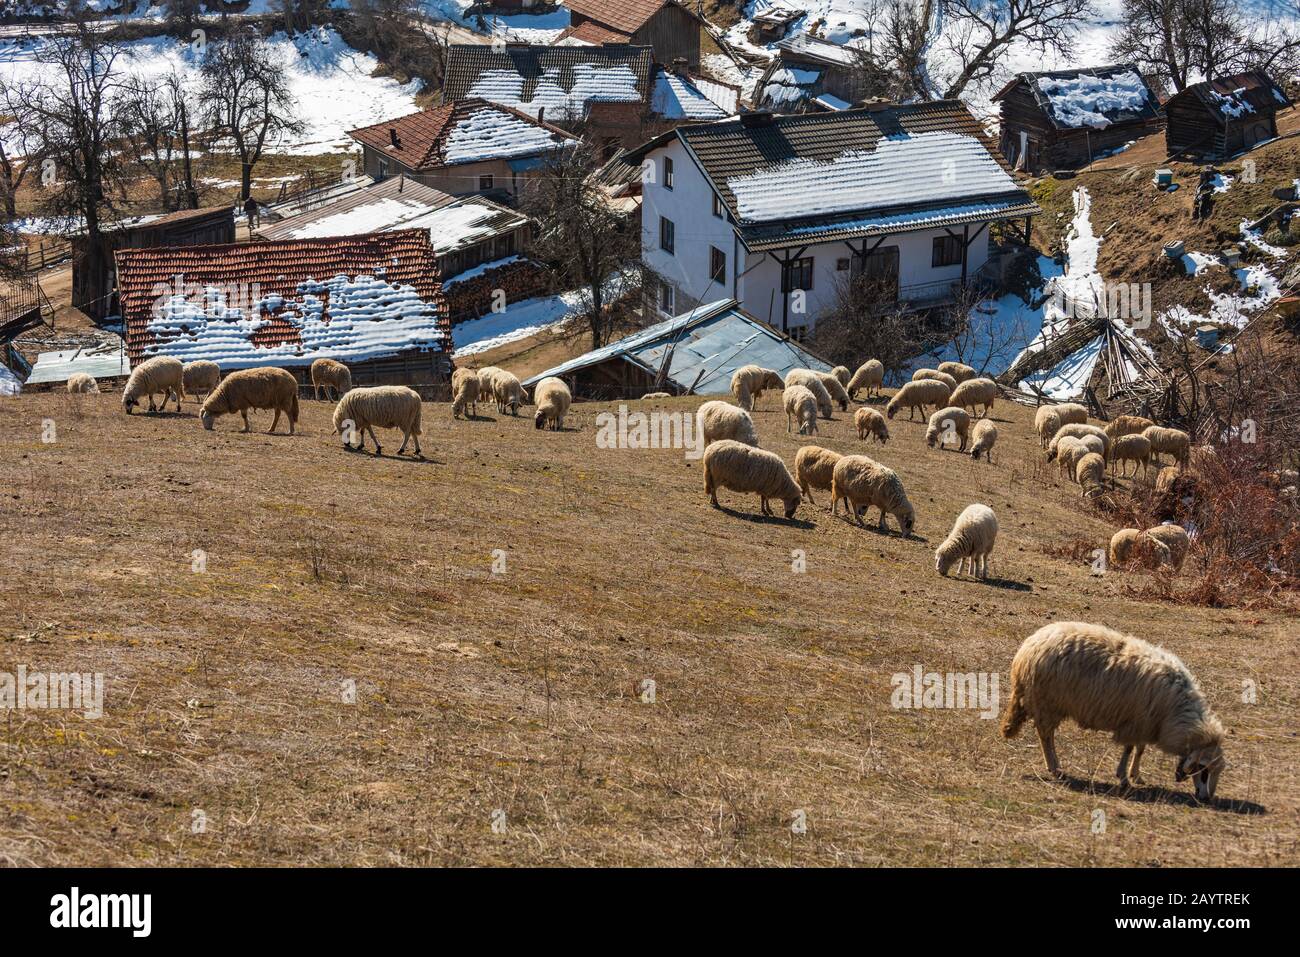 Haut dans les montagnes de Rhodope, la Bulgarie dans le petit village de moutons paissent sur le terrain. Les moutons fournissent de la laine, de la viande de lait pour les habitants de la région Banque D'Images